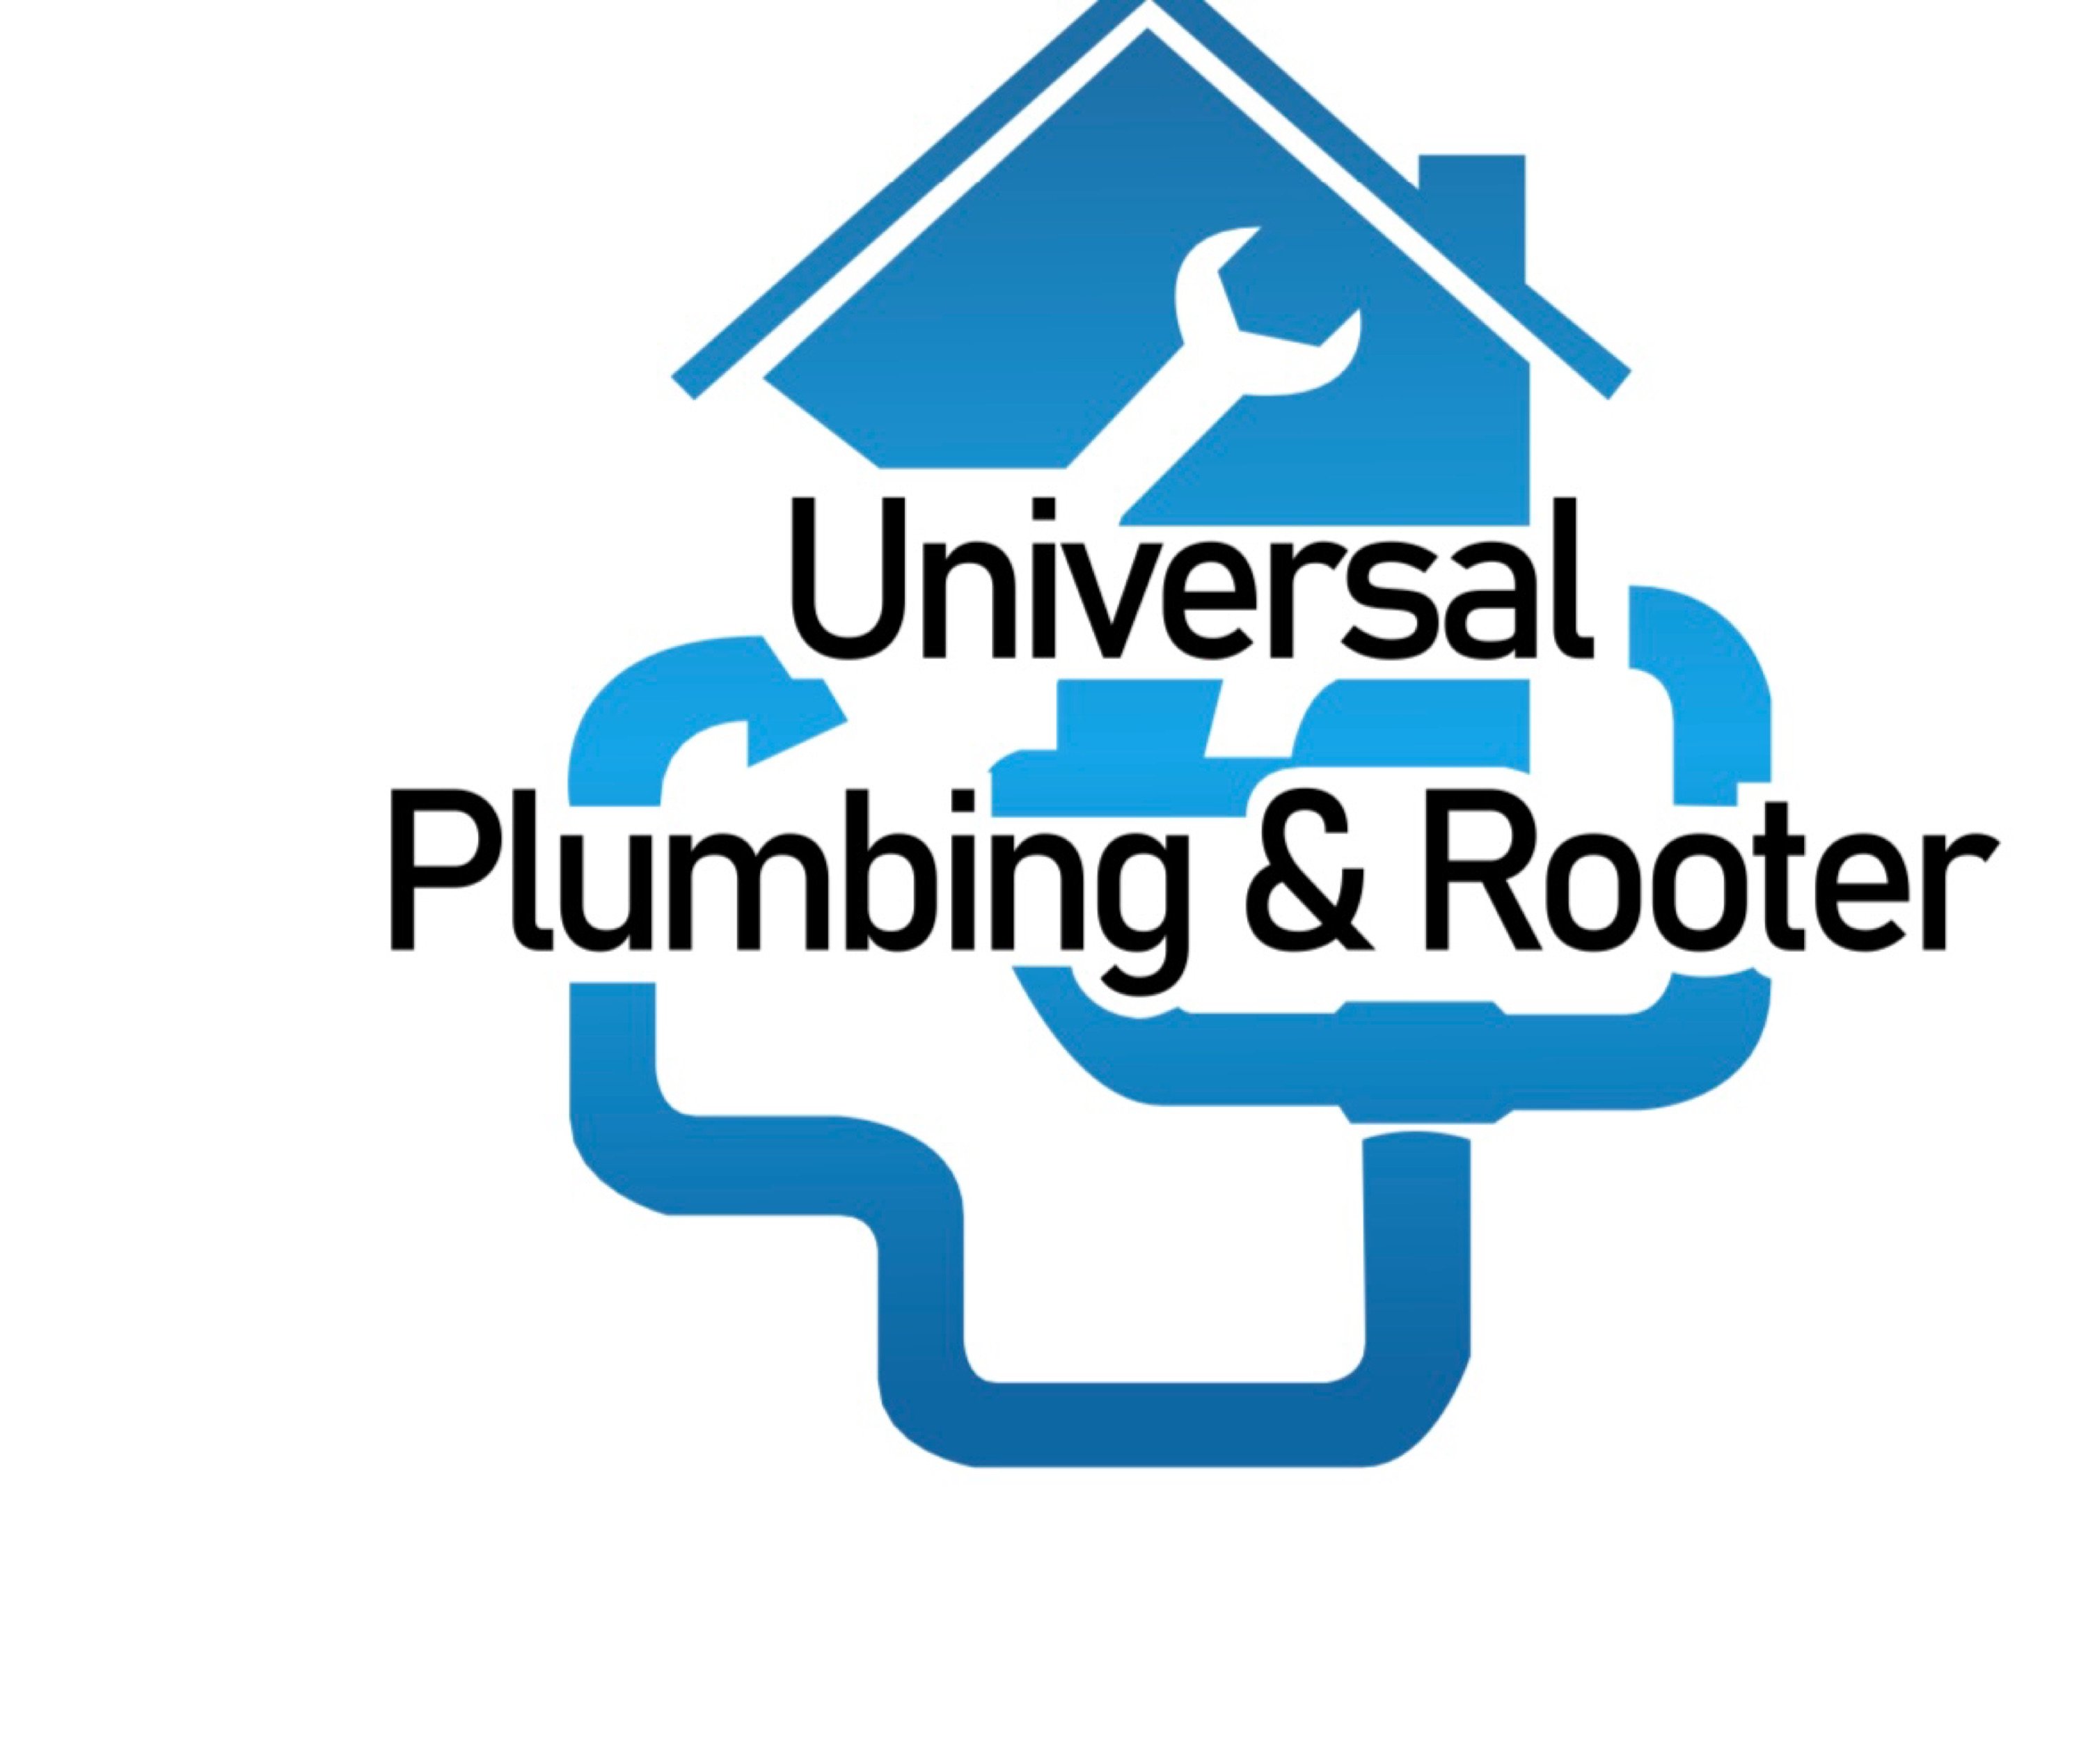 Universal Plumbing & Rooter Logo